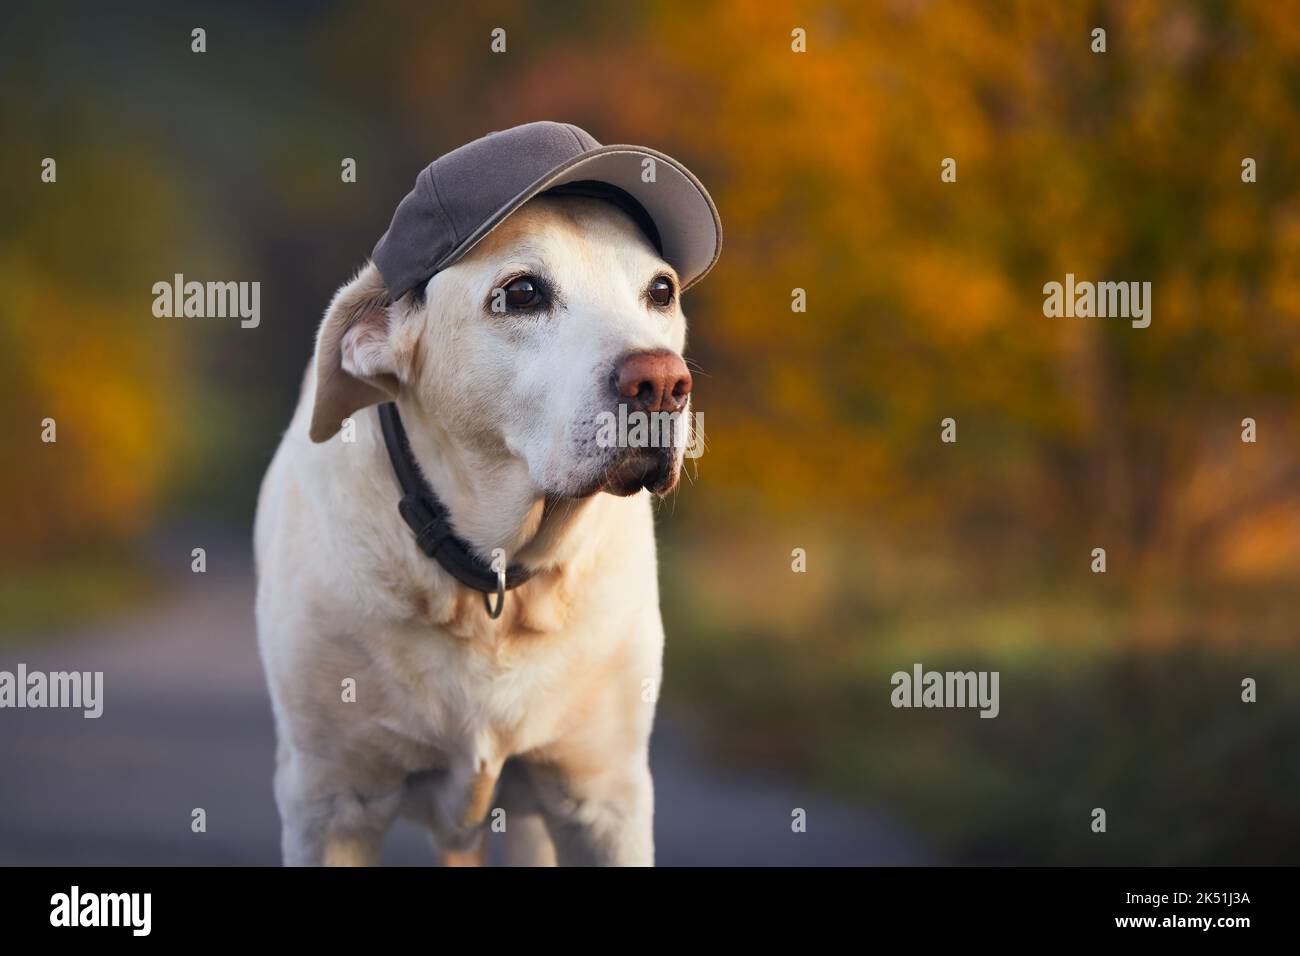 Lustiges Porträt eines alten Hundes. Labrador Retriever trägt Mütze während des Spaziergangs in der herbstlichen Natur. Stockfoto